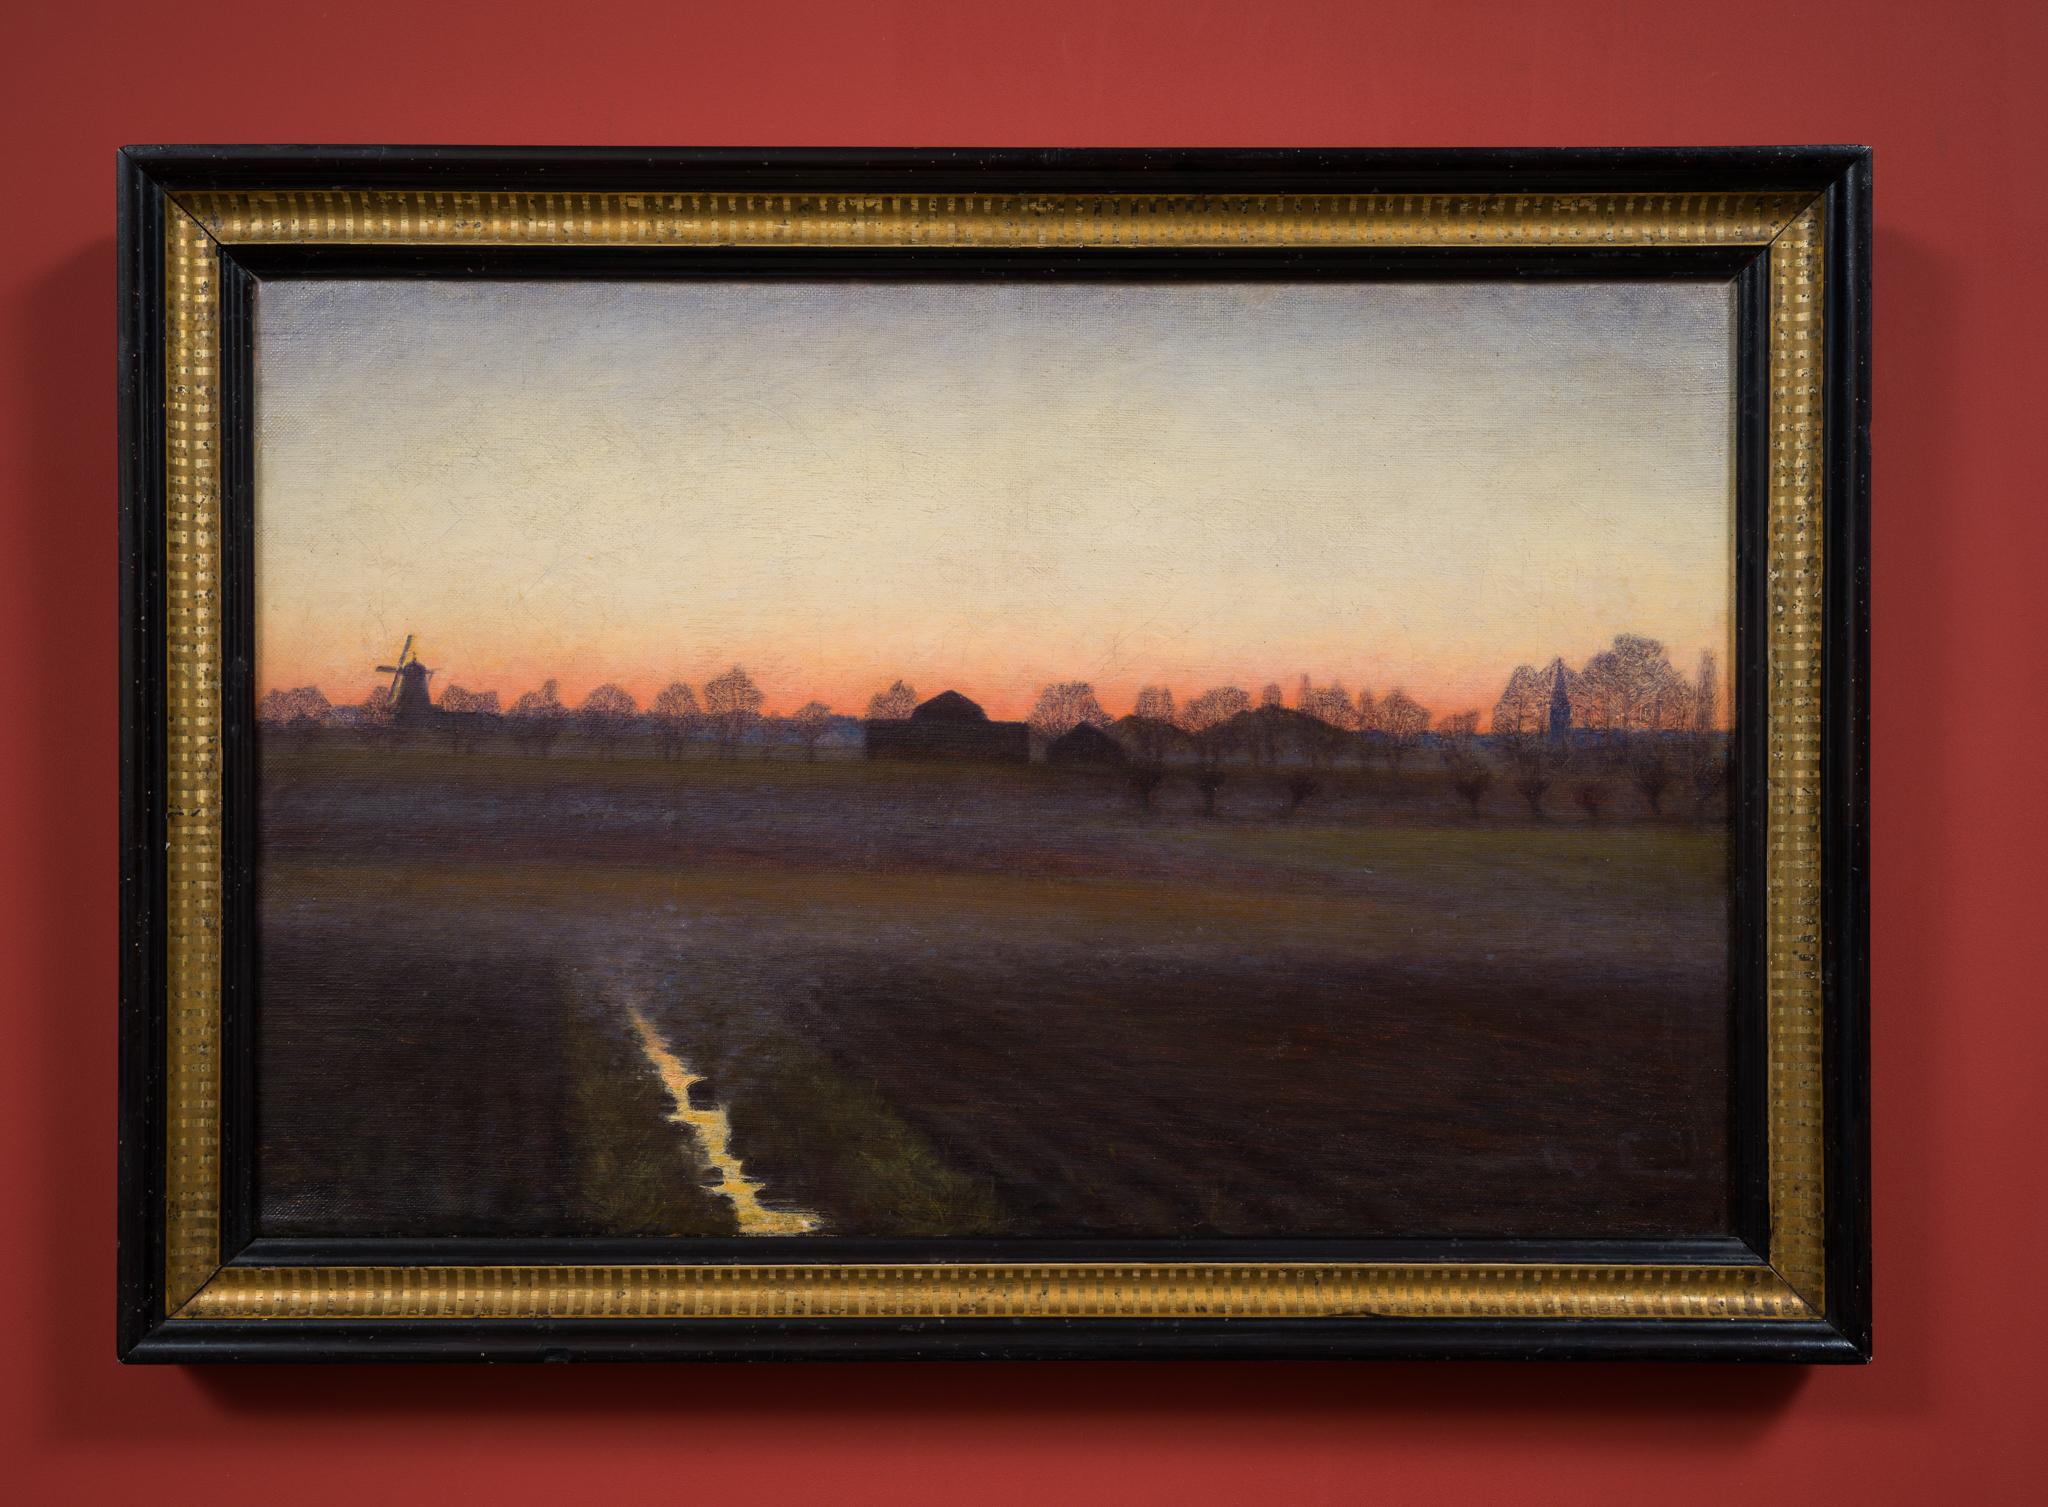 Twilight-Landschaft mit Windmühlen und Kirche, 1891 (Romantik), Painting, von Albert Larsson